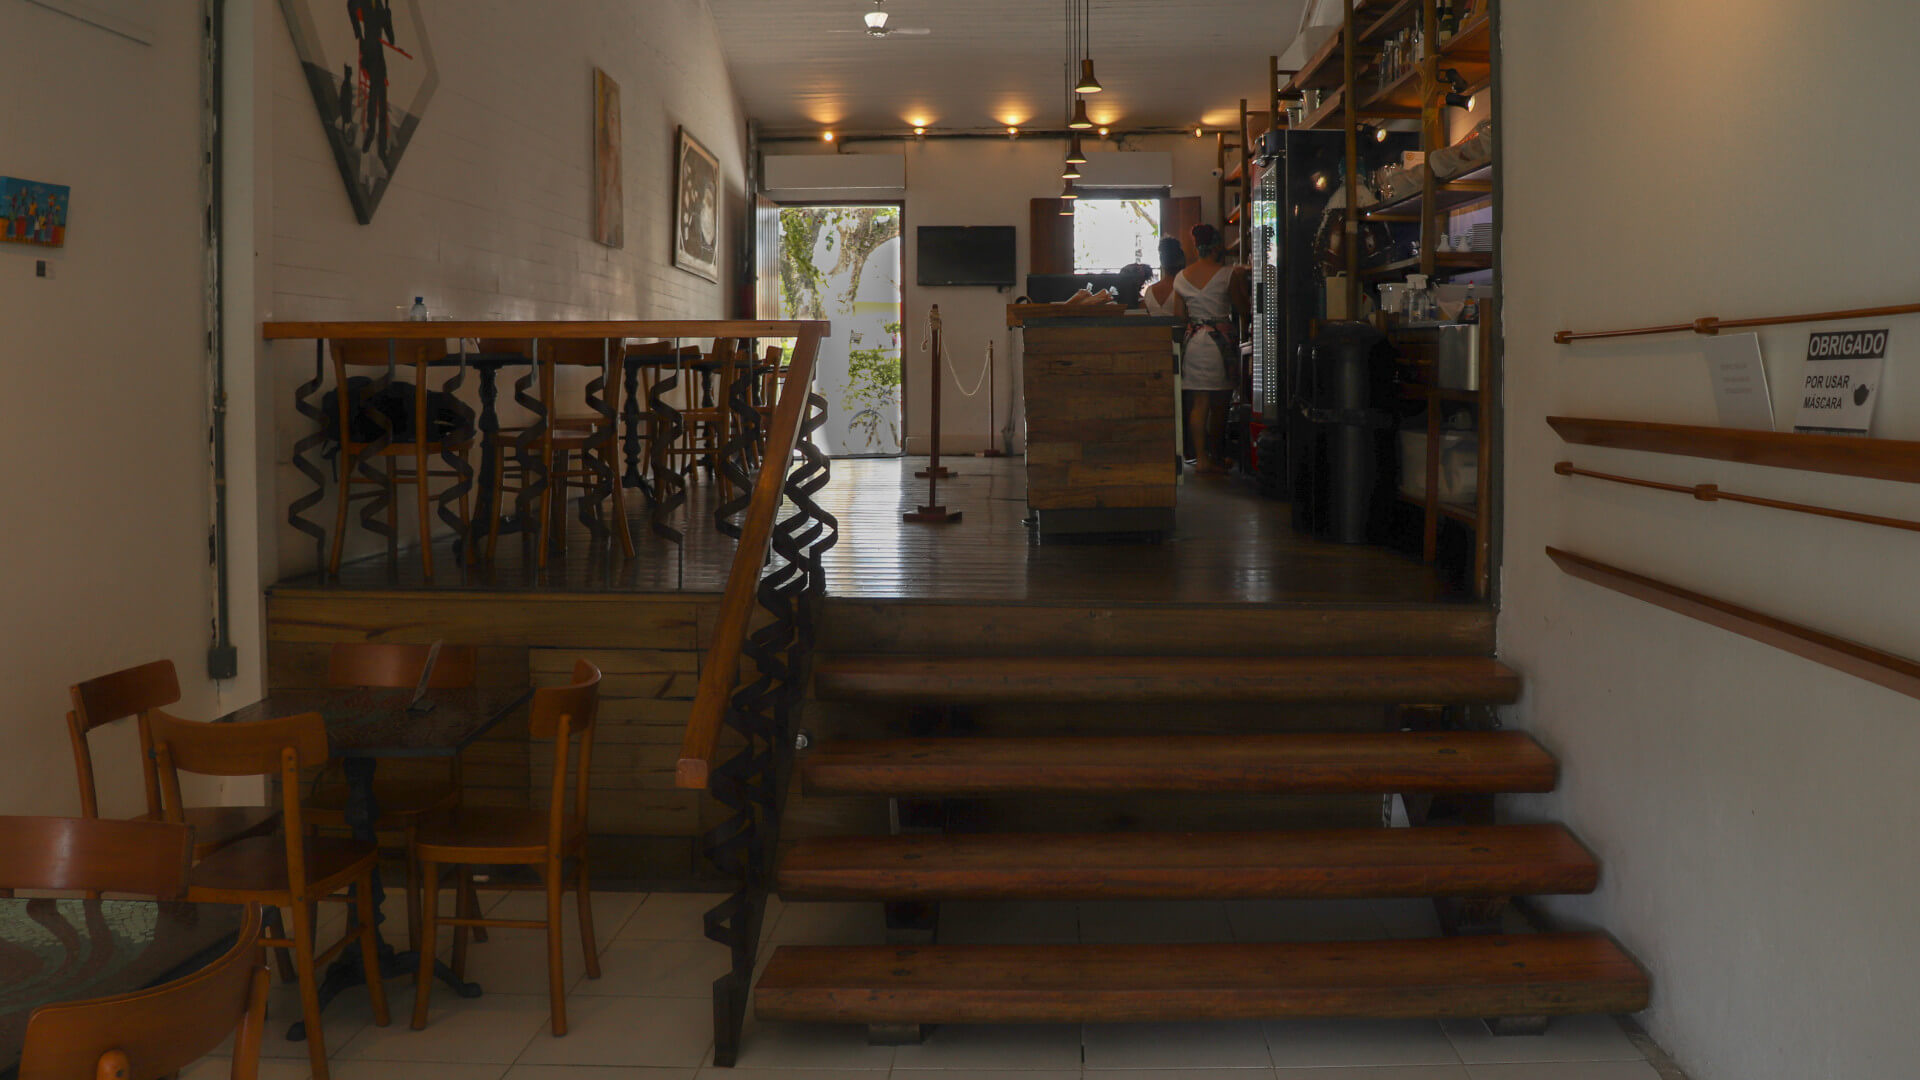 Café da Santa - delicatesse e restaurante em Arraial d'Ajuda | Visite Arraial d'Ajuda